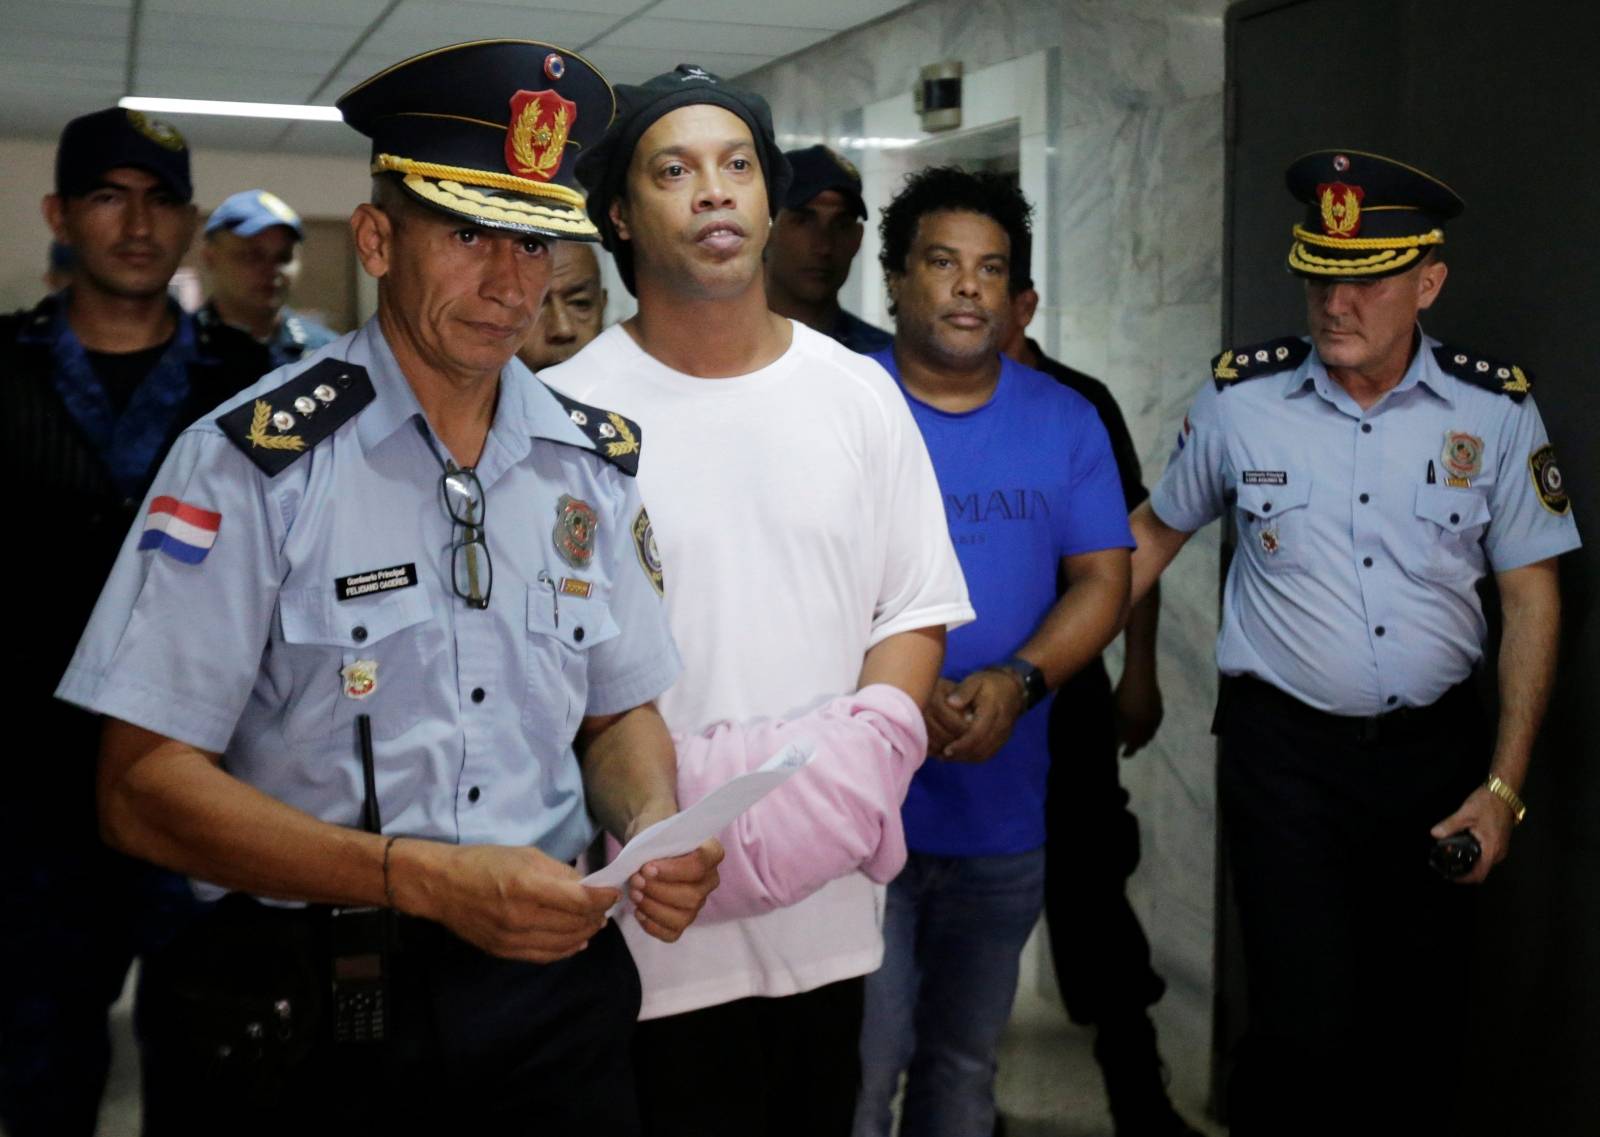 Judge rules Ronaldinho must remain in Paraguayan jail